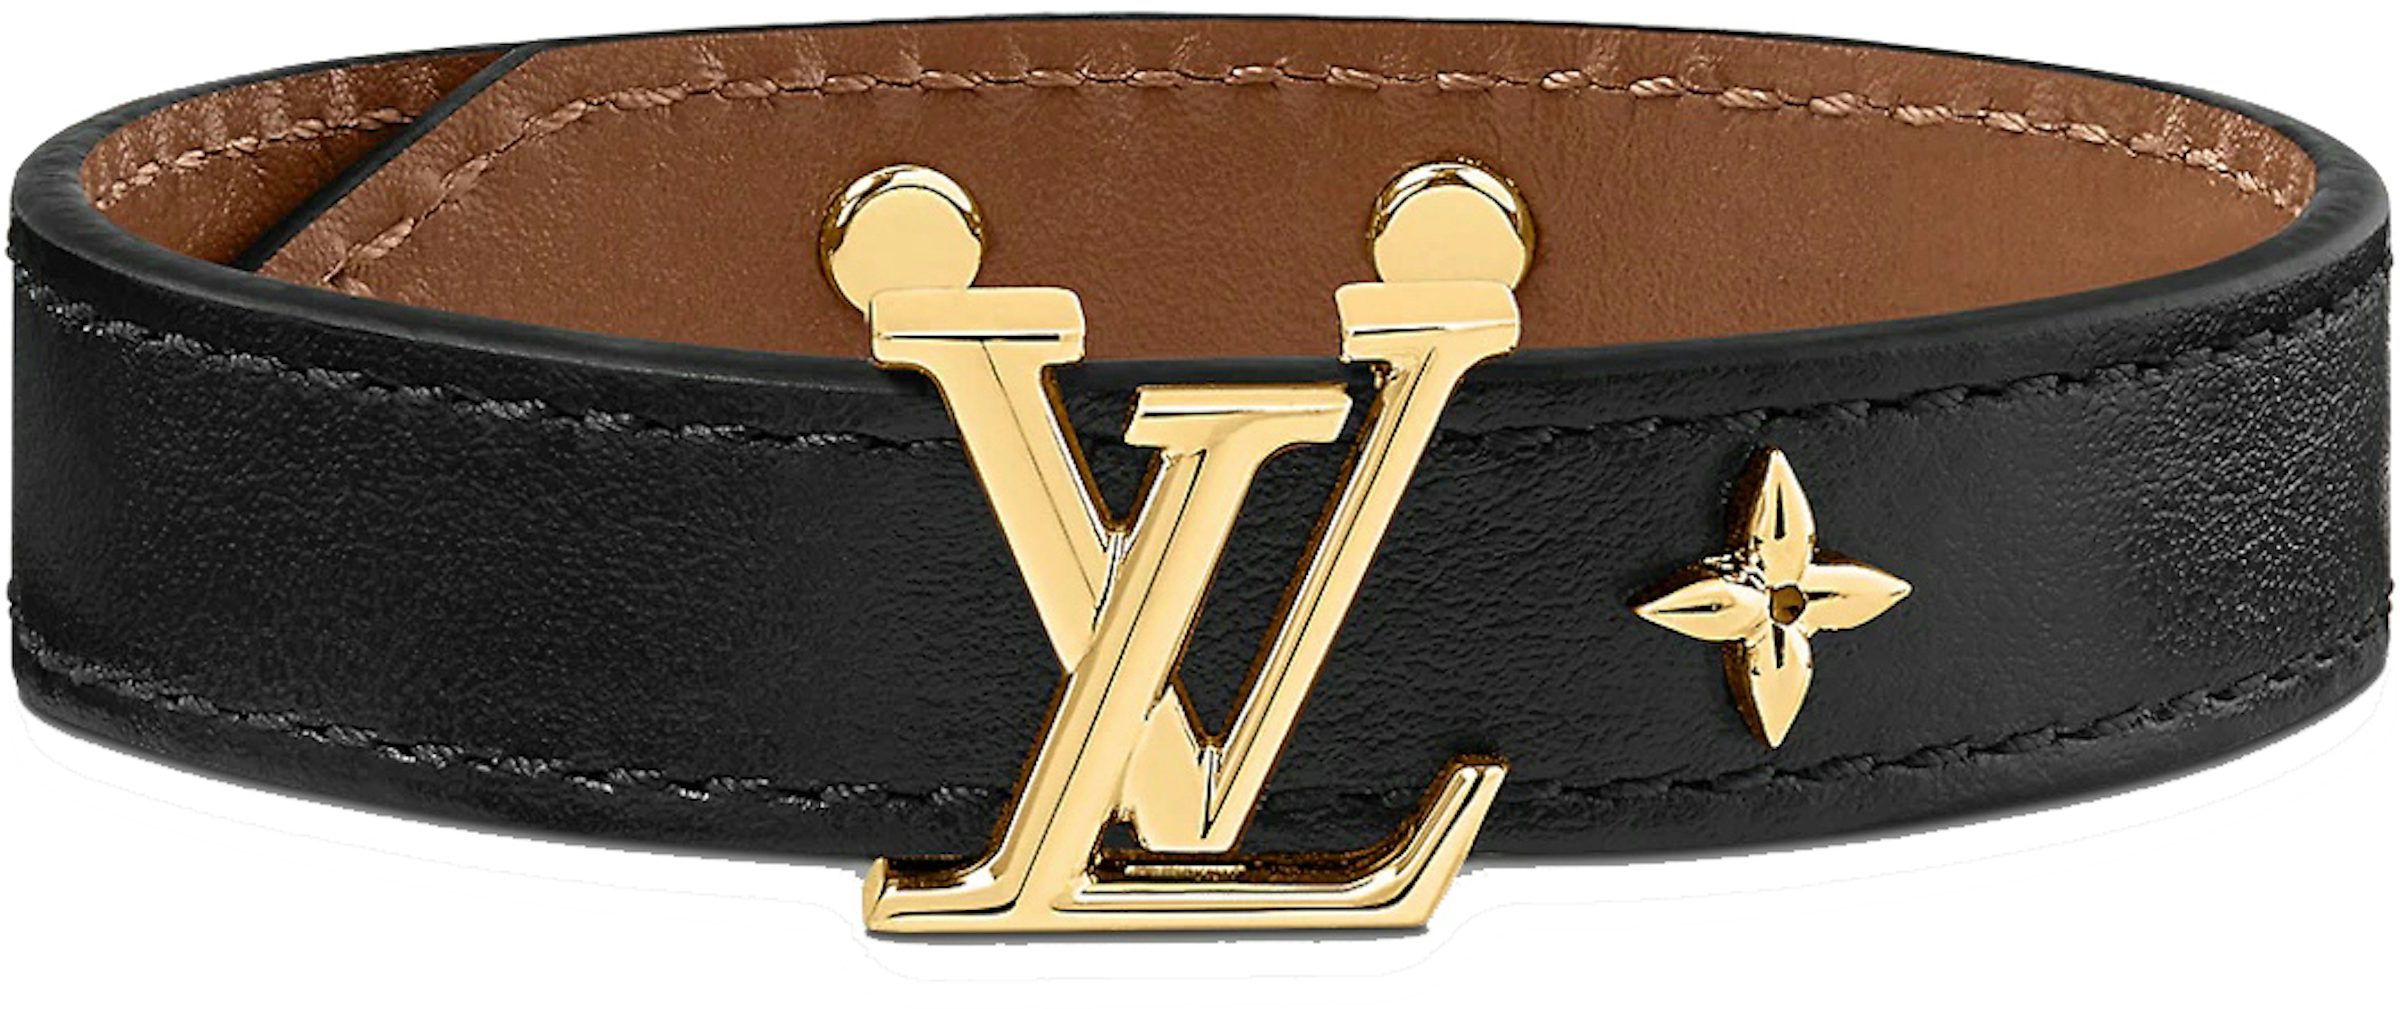 Louis Vuitton Daily Confidential Bracelet Black Monogram. Size 17